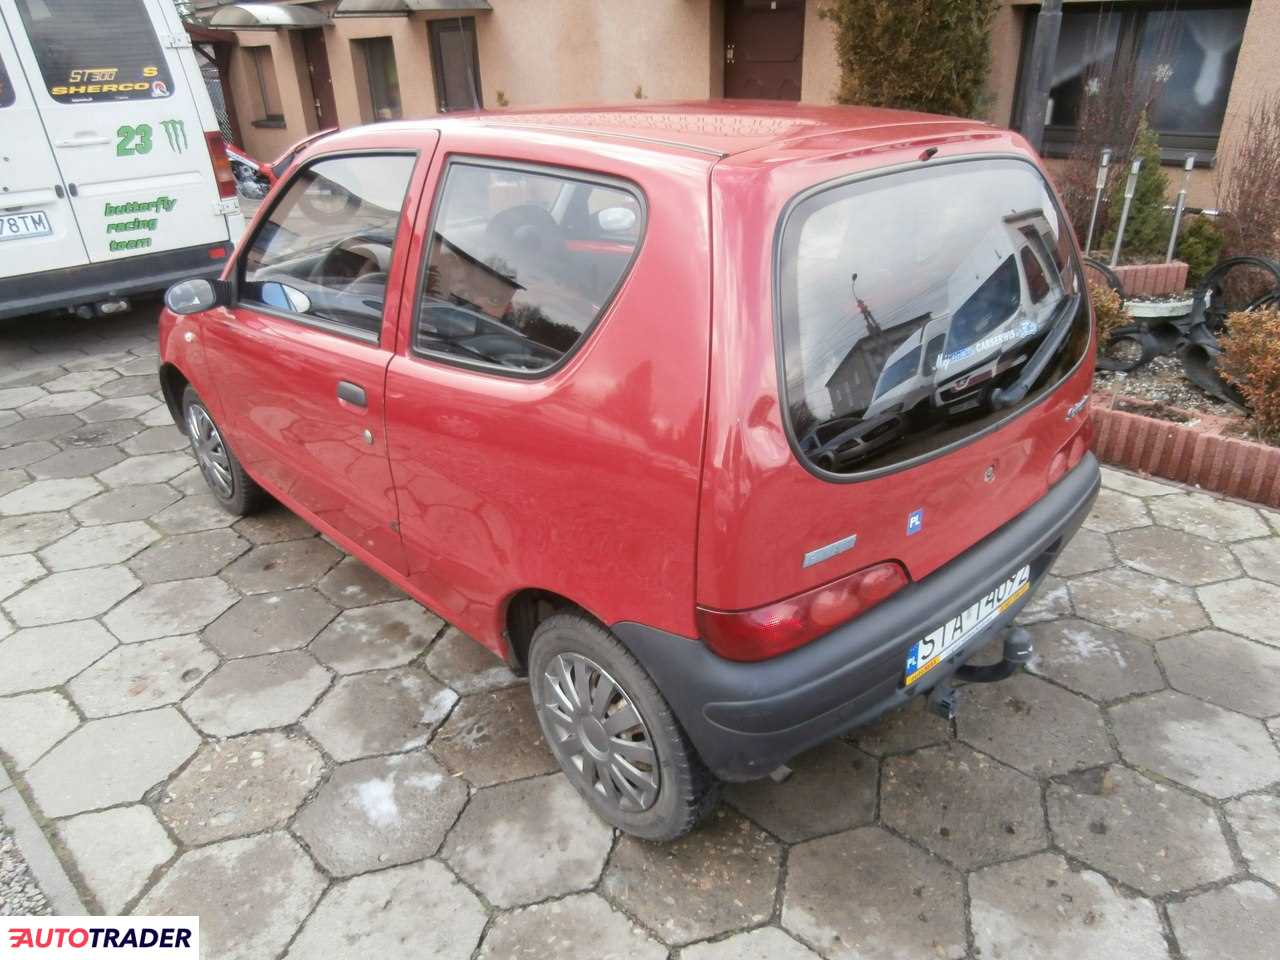 Fiat Seicento 1.1 benzyna 55 KM 2003r. (Dobieszowice